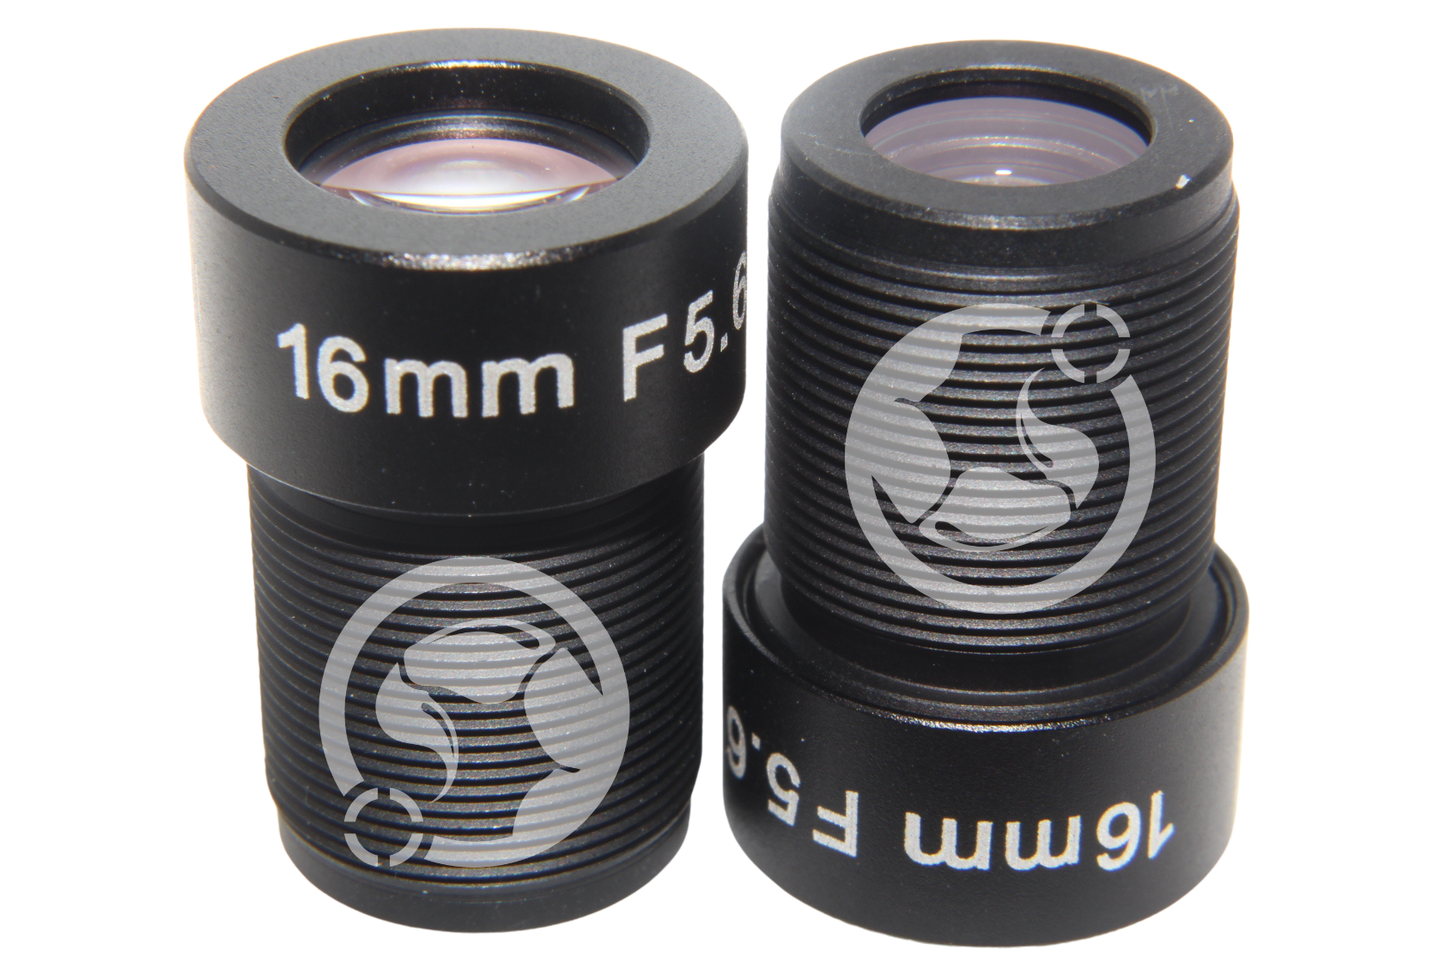 M12 Lens 16mm F5.6